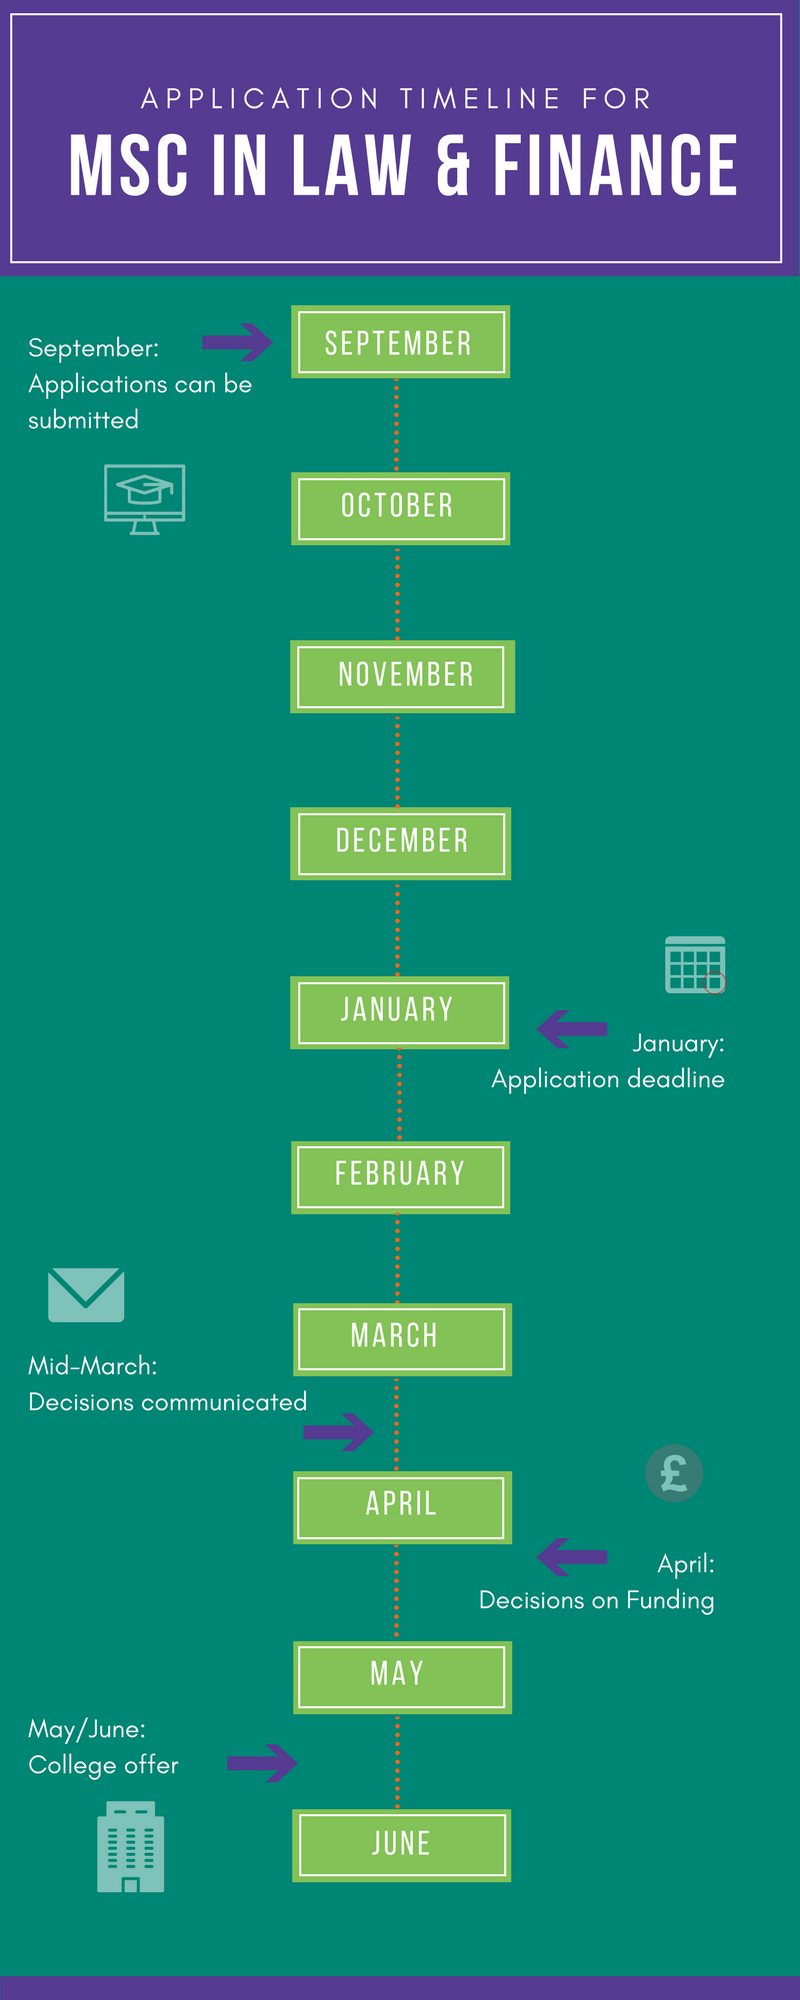 MLF Application timeline